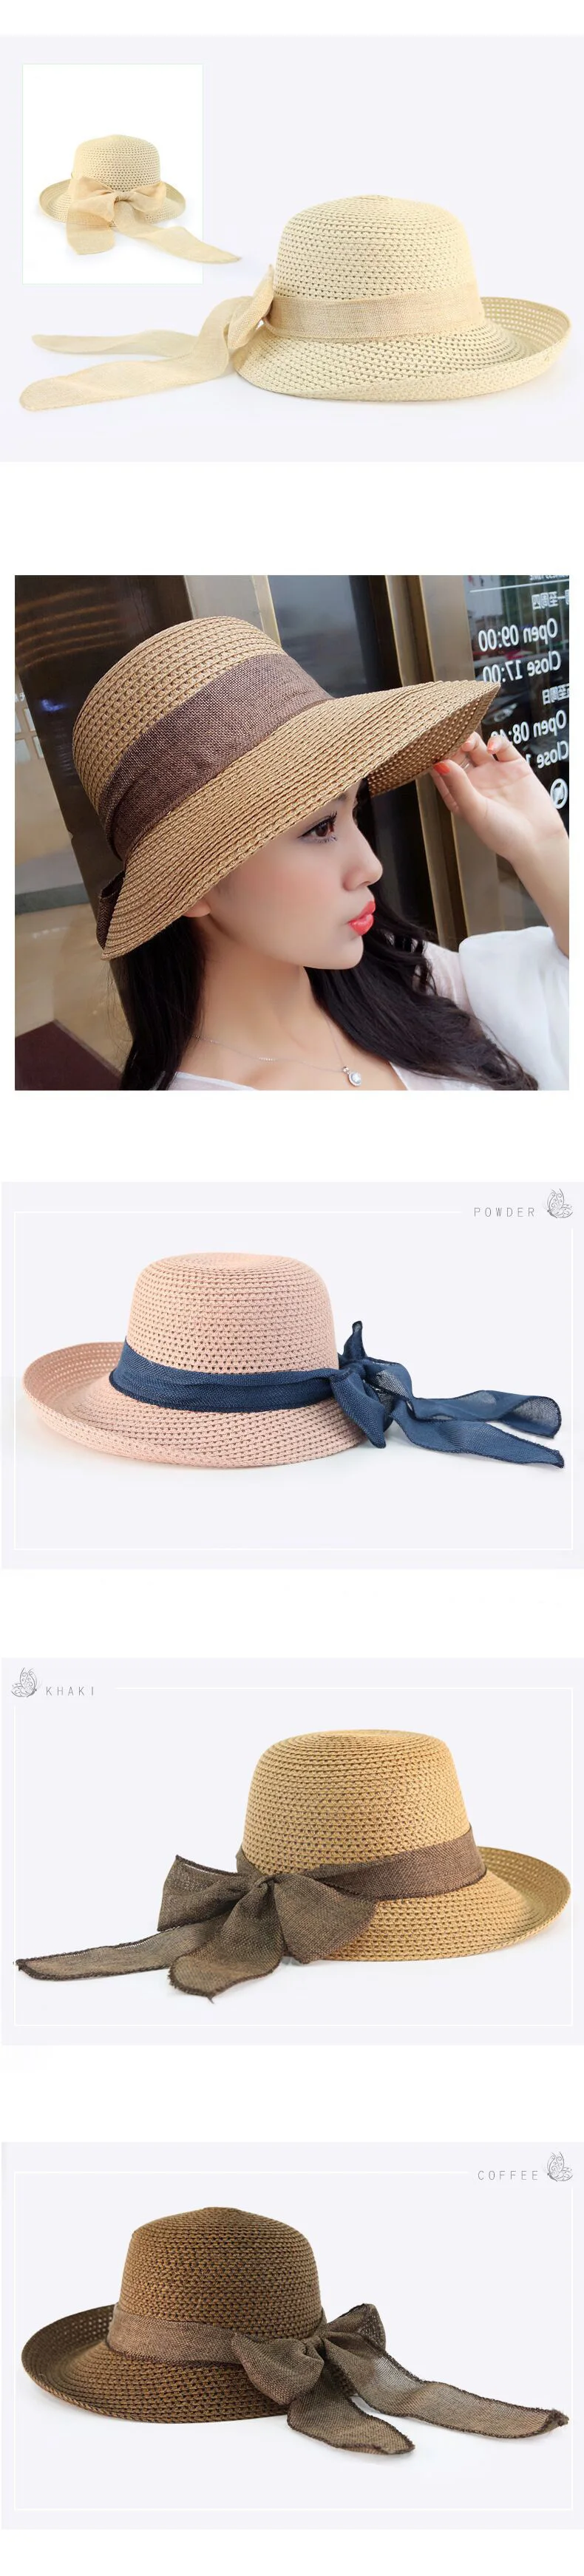 Летние солнцезащитные шляпы для женщин, складные соломенные солнечные шляпы с широкими полями, шляпа для отдыха в пляжном стиле, женская шляпа с блестками